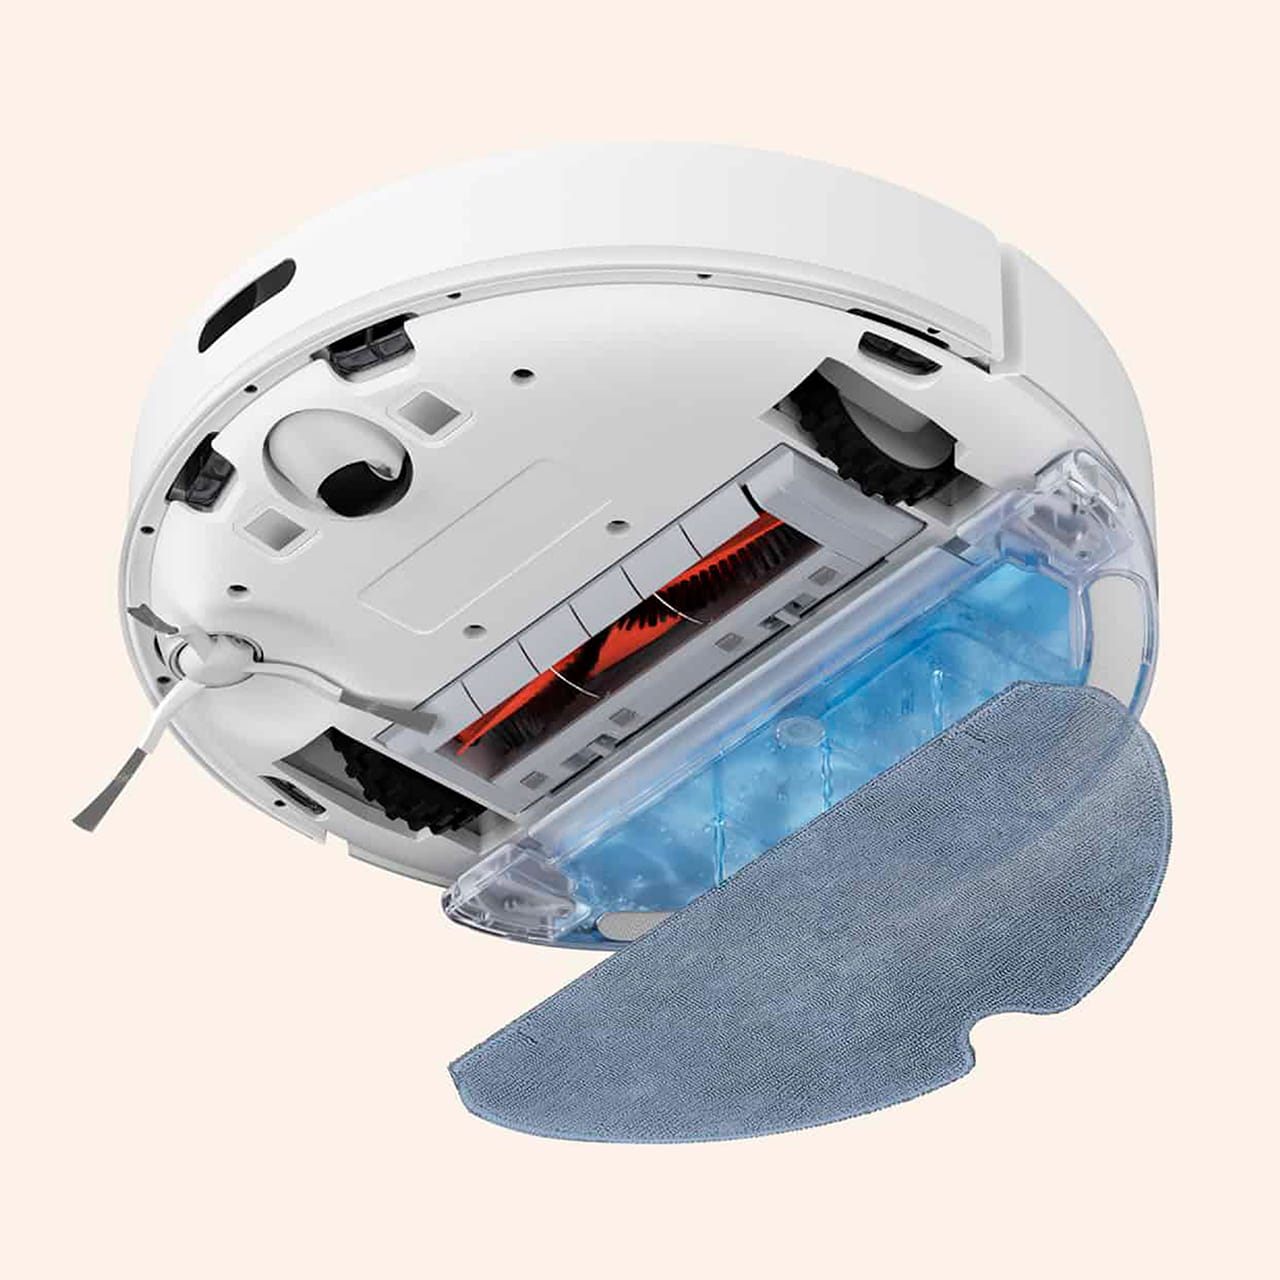 У робота-пылесоса Dreame C9 есть три режима влажной уборки